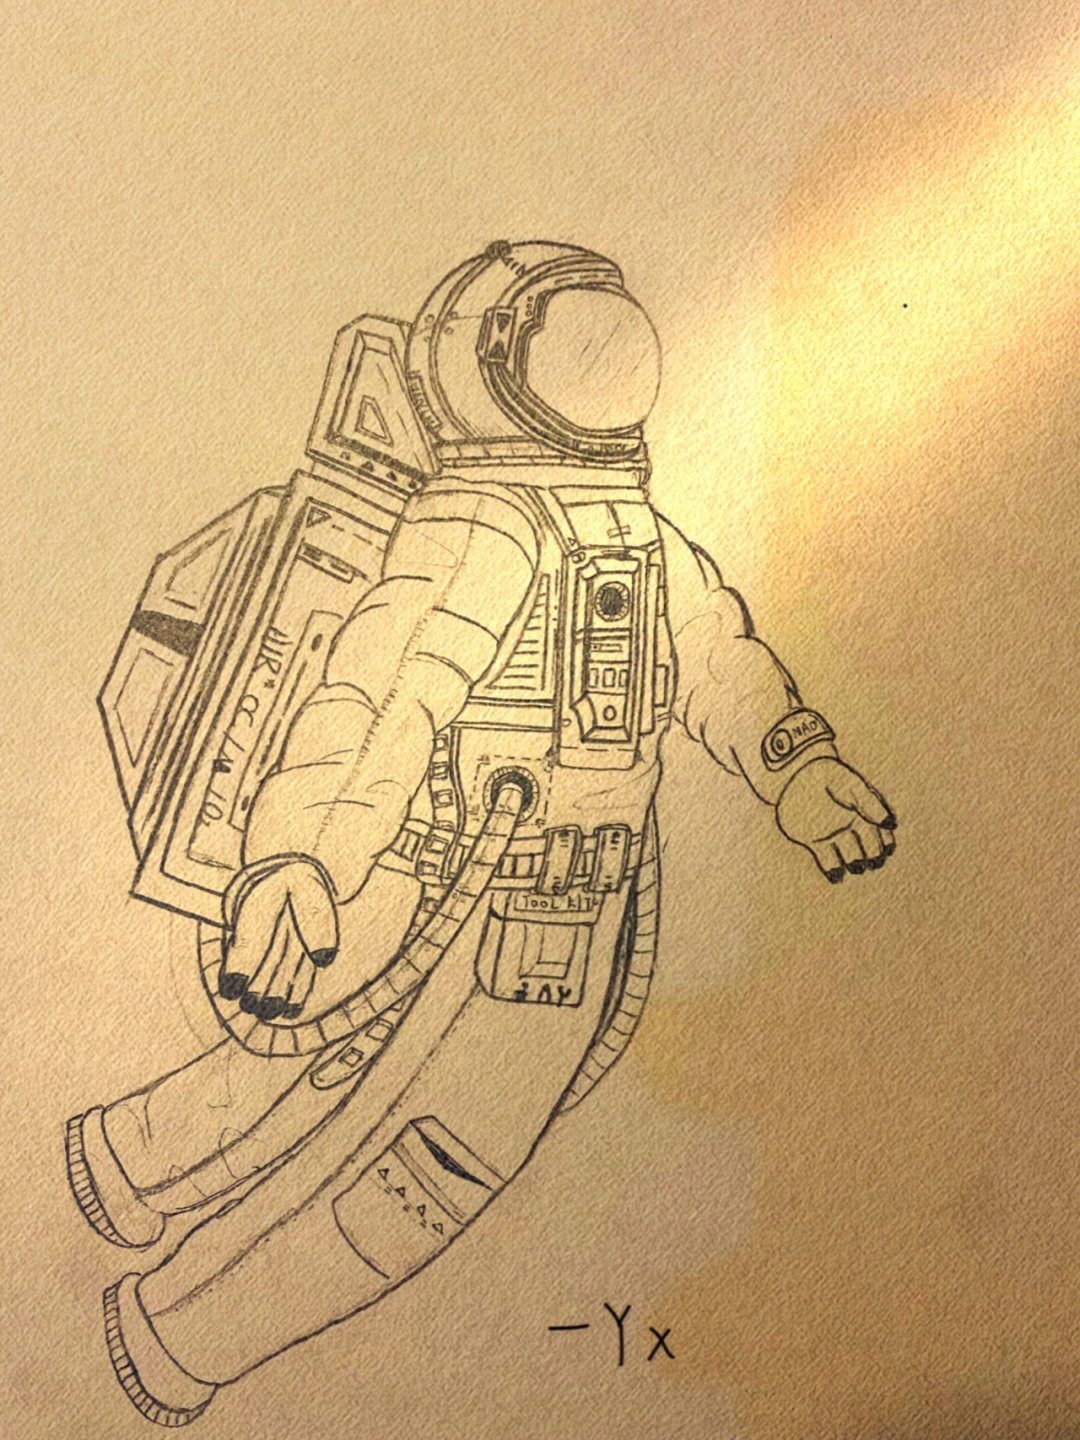 宇航员素描简单图片